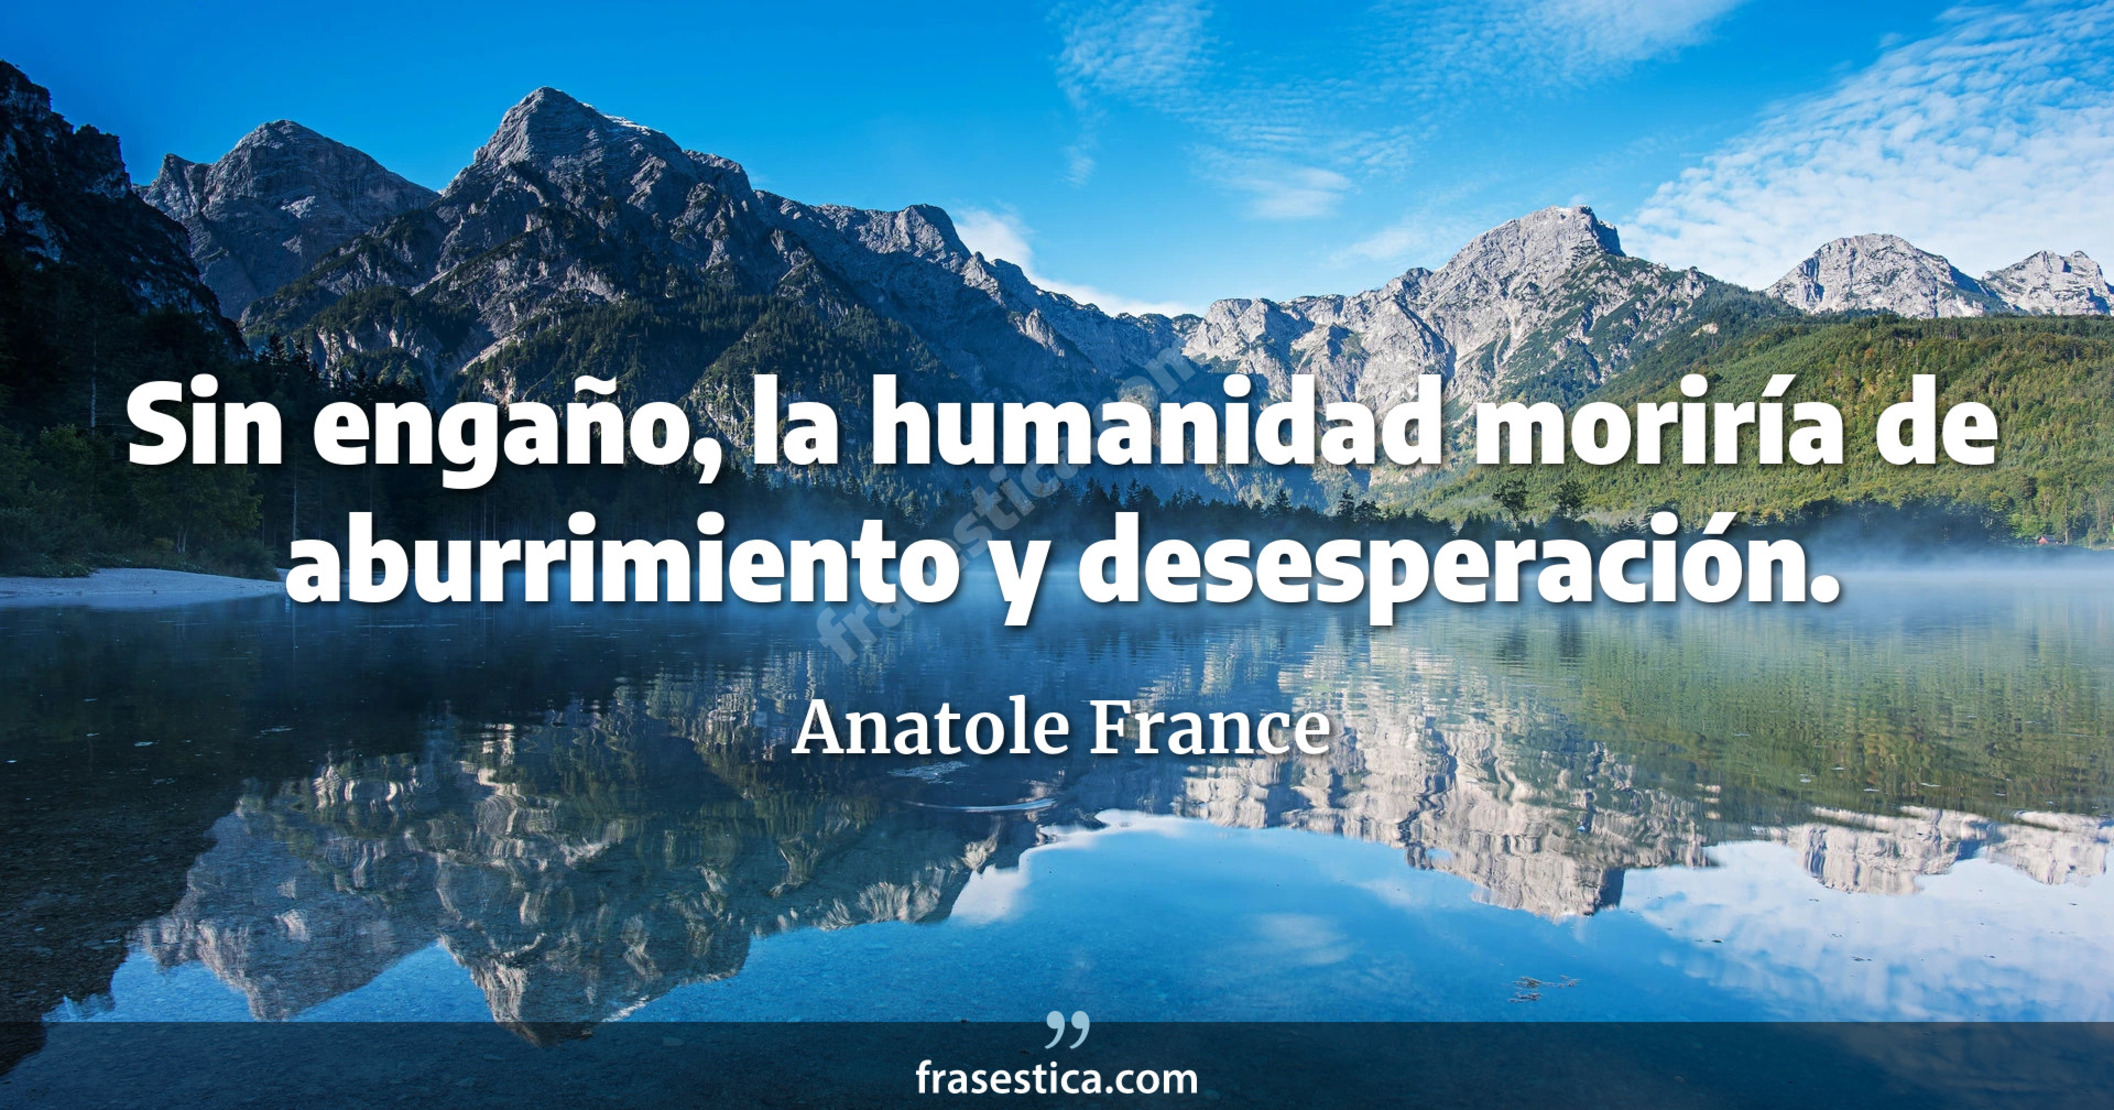 Sin engaño, la humanidad moriría de aburrimiento y desesperación. - Anatole France